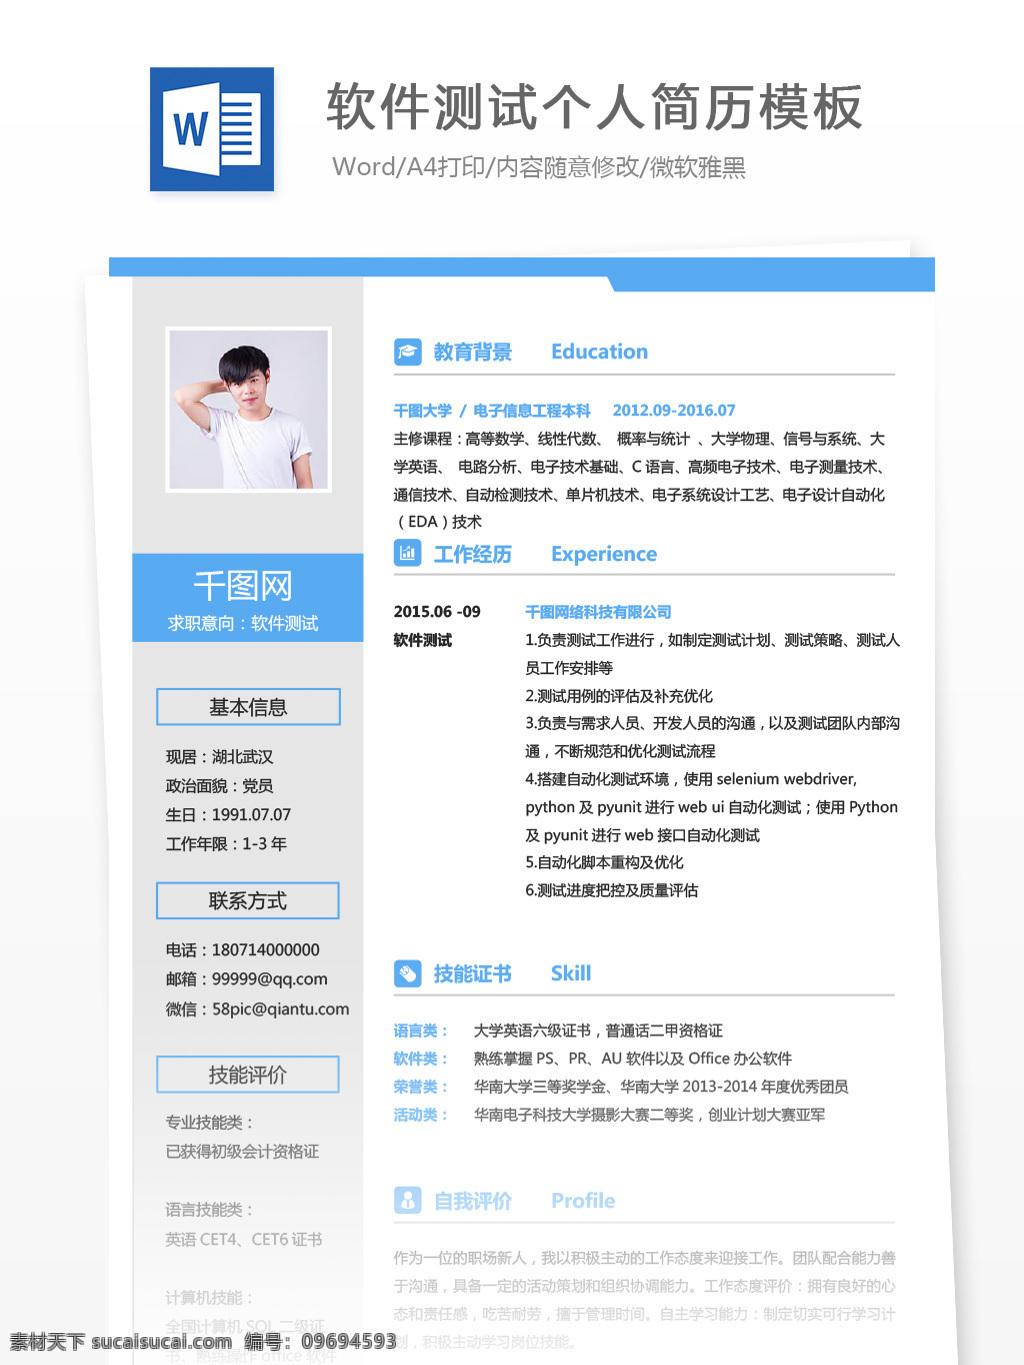 刘 兆祥 软件测试 个人简历 模板 简历模板 简历 蓝色 商务 个人简历模板 13年 it 测试 经典风格